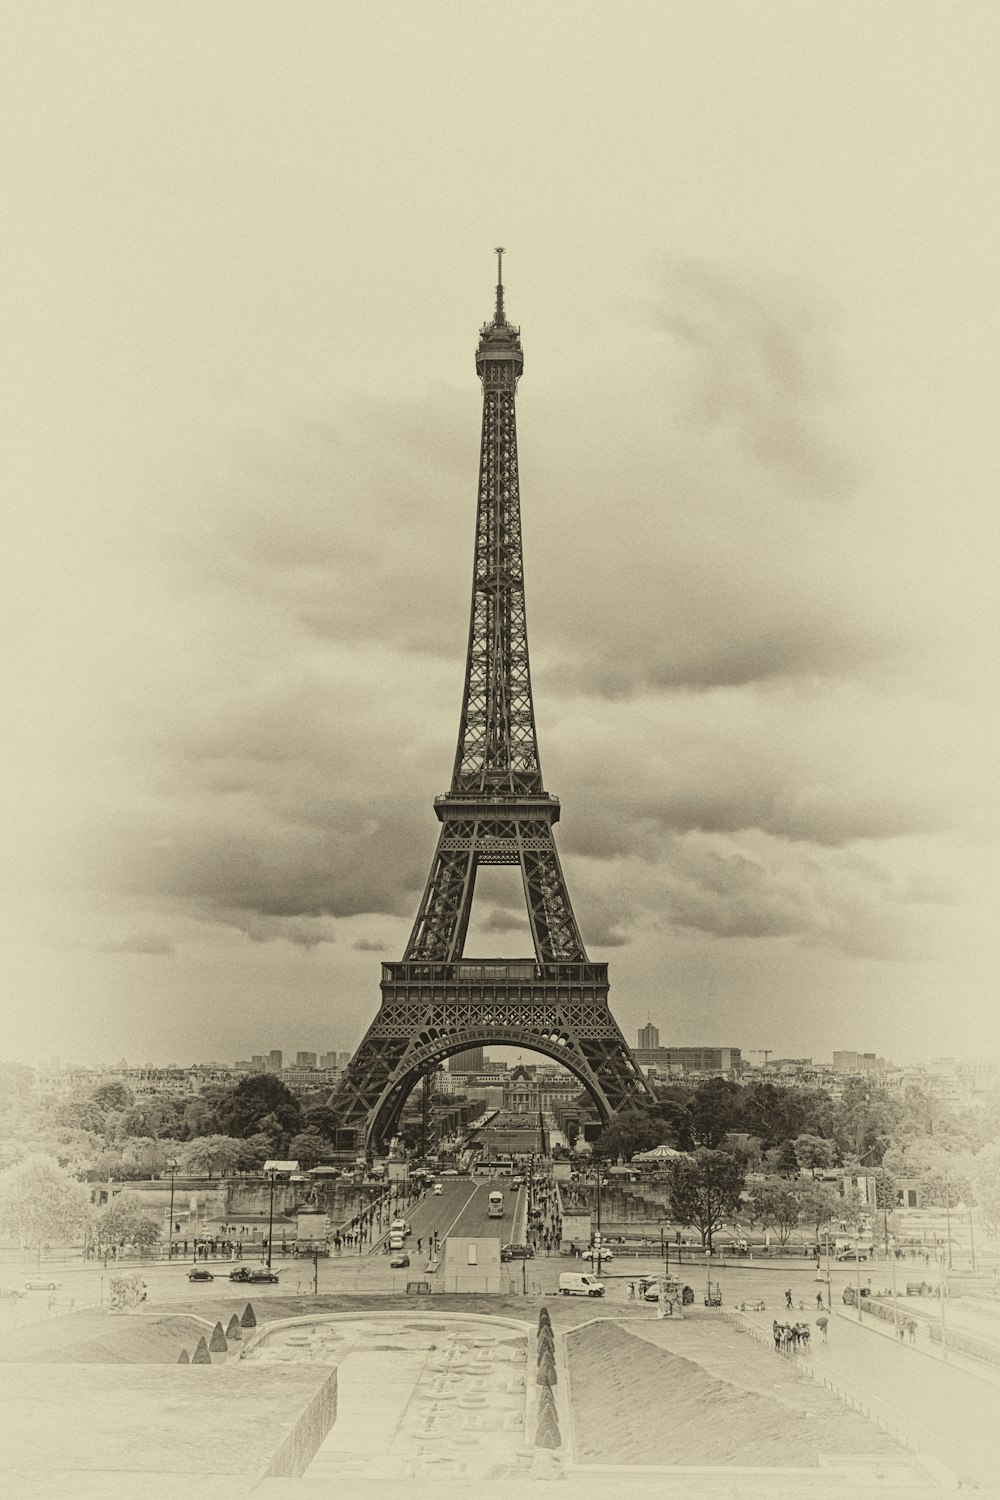 Muy transitada carretera que muestra la Torre Eiffel, París, Francia